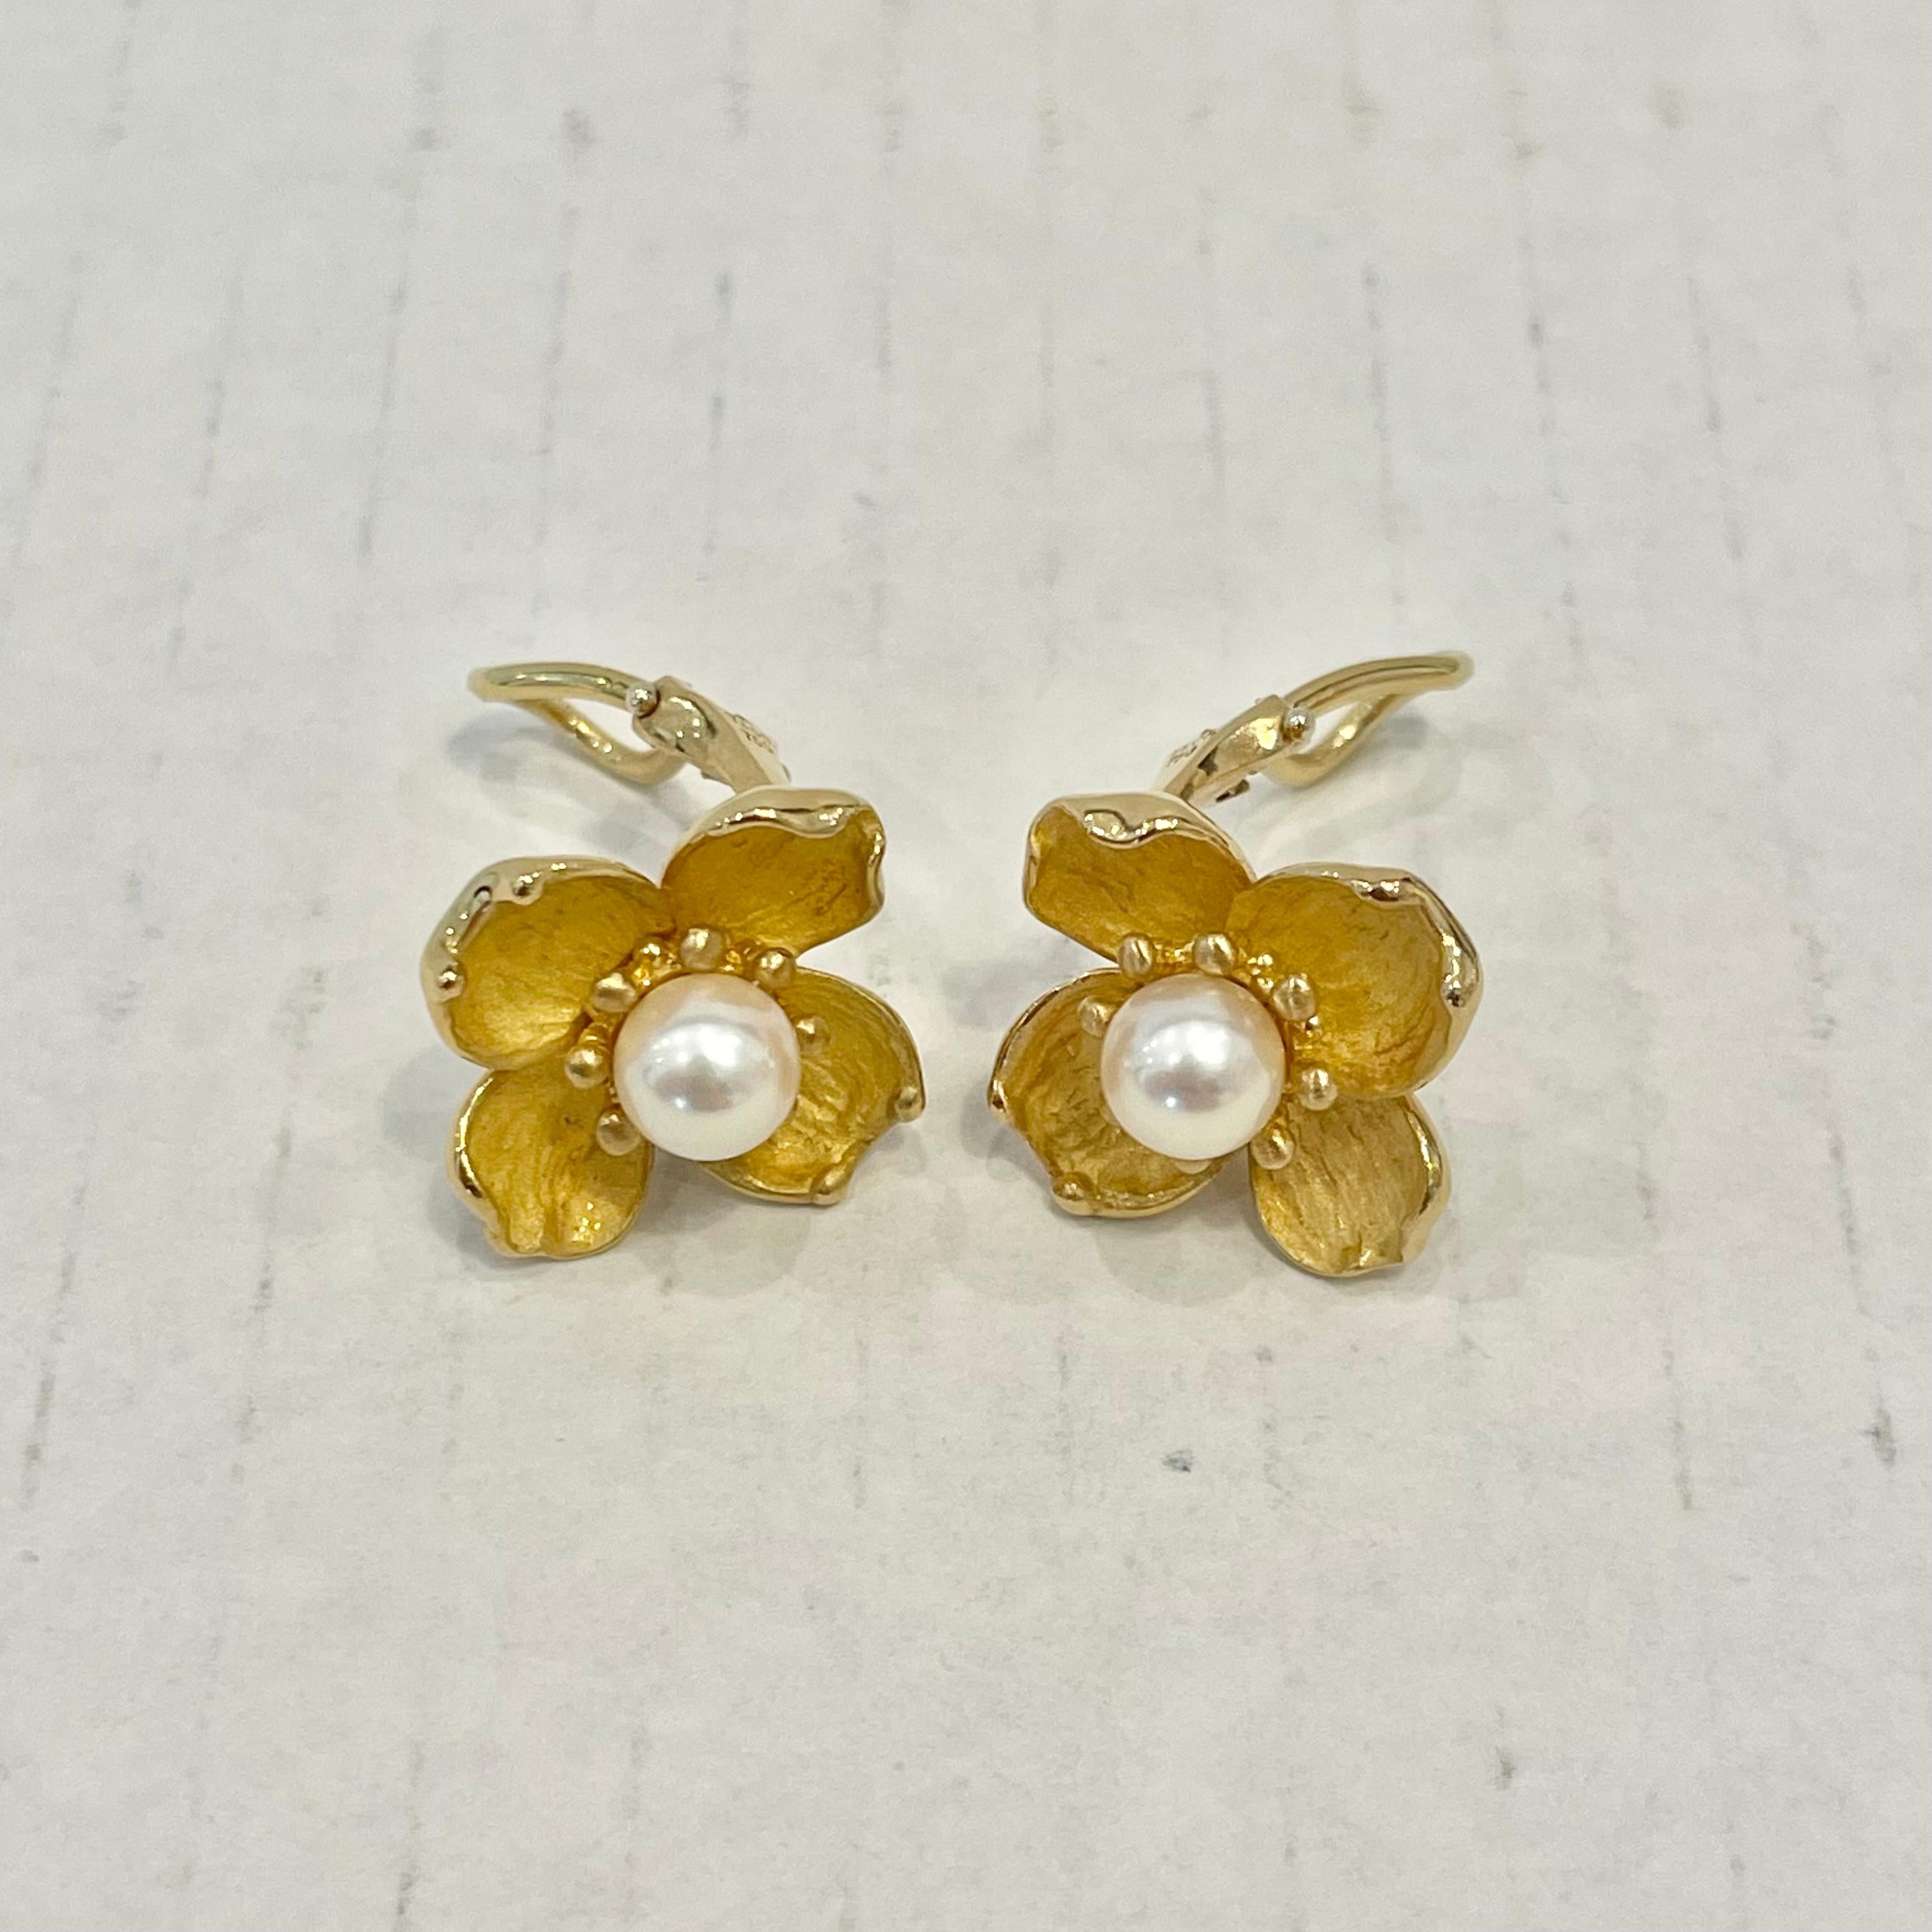 Tiffany & Co. Dogwood & Pearl Earrings in 18 Karat Yellow Gold For Sale 5